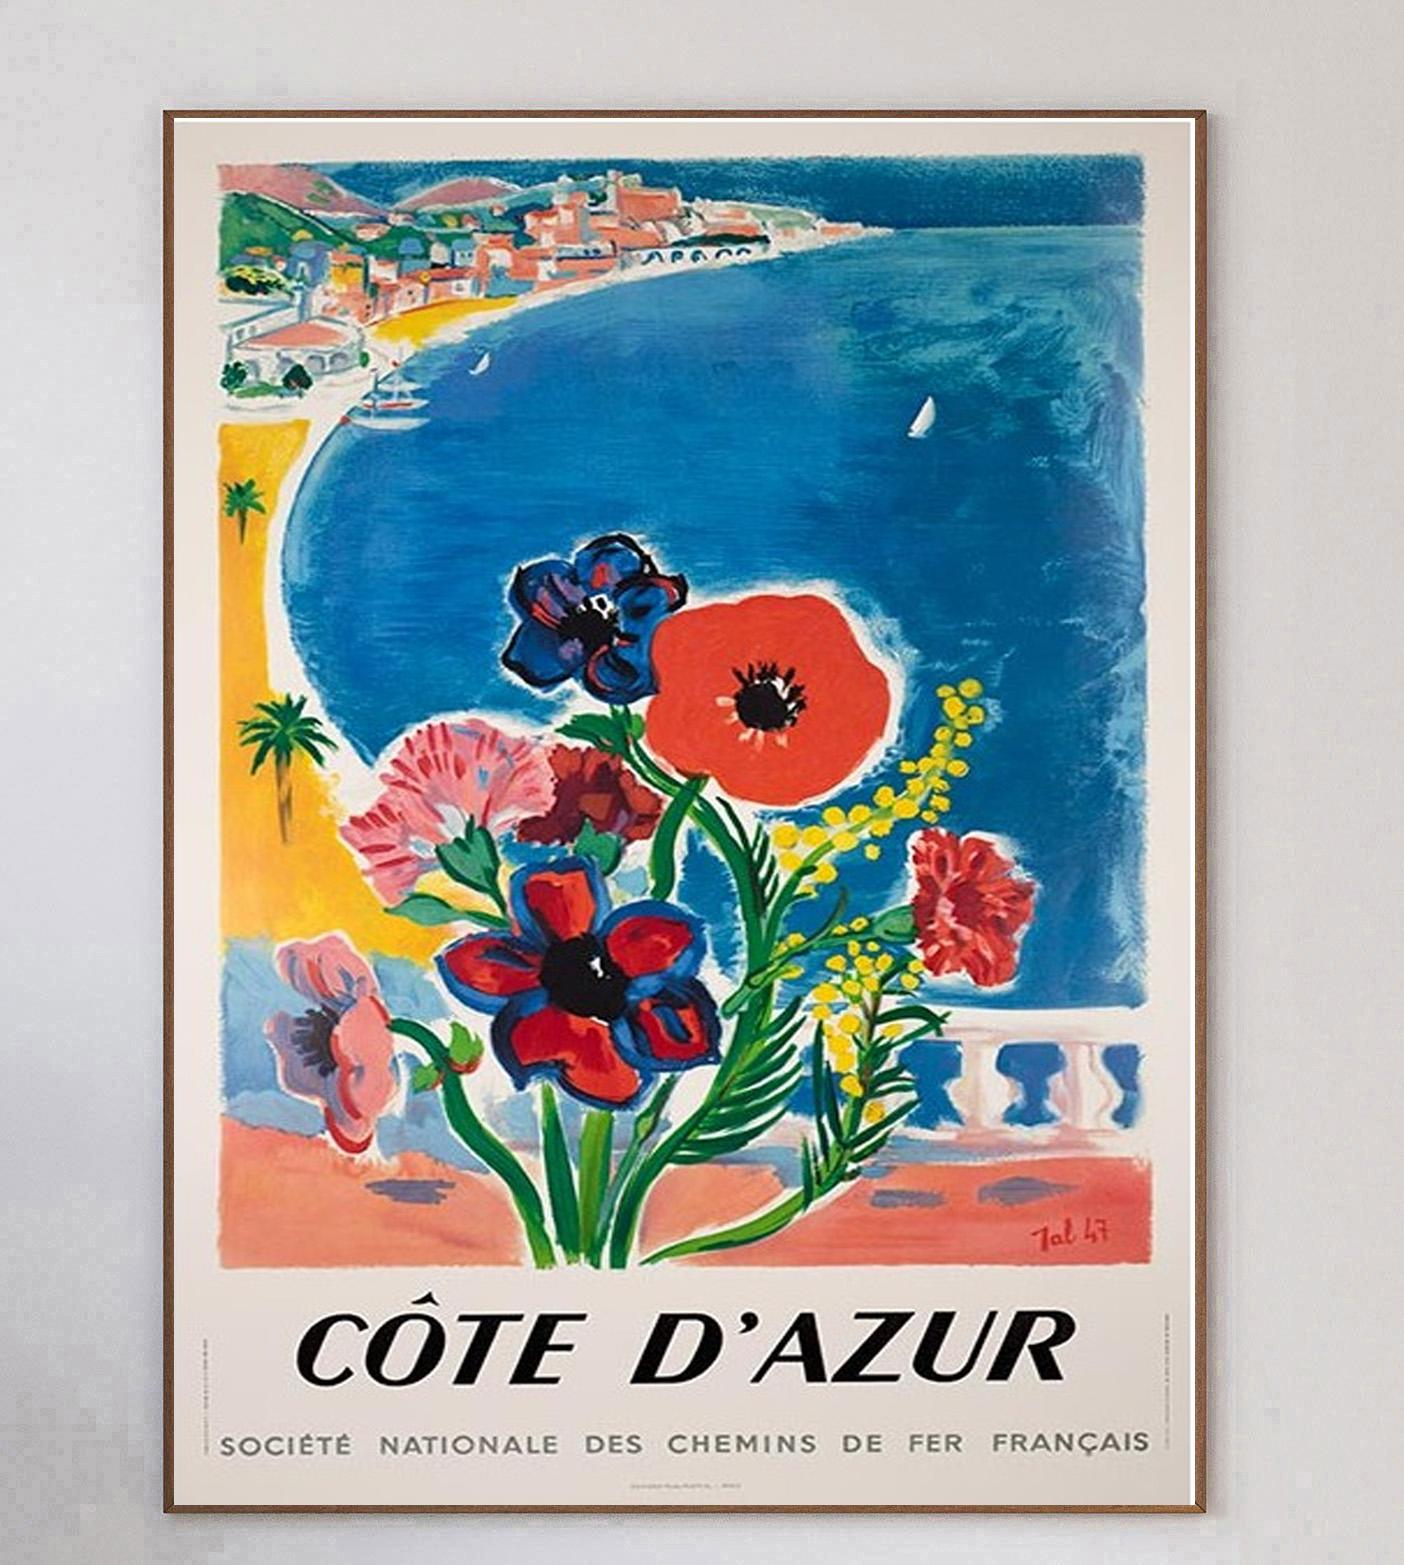 Charmante affiche de 1970 pour les chemins de fer français SNCF promouvant leurs itinéraires vers la Côte d'Azur dans le sud de la France. 

Cette œuvre vibrante, qui représente une scène ensoleillée derrière un bouquet de fleurs, a été conçue par